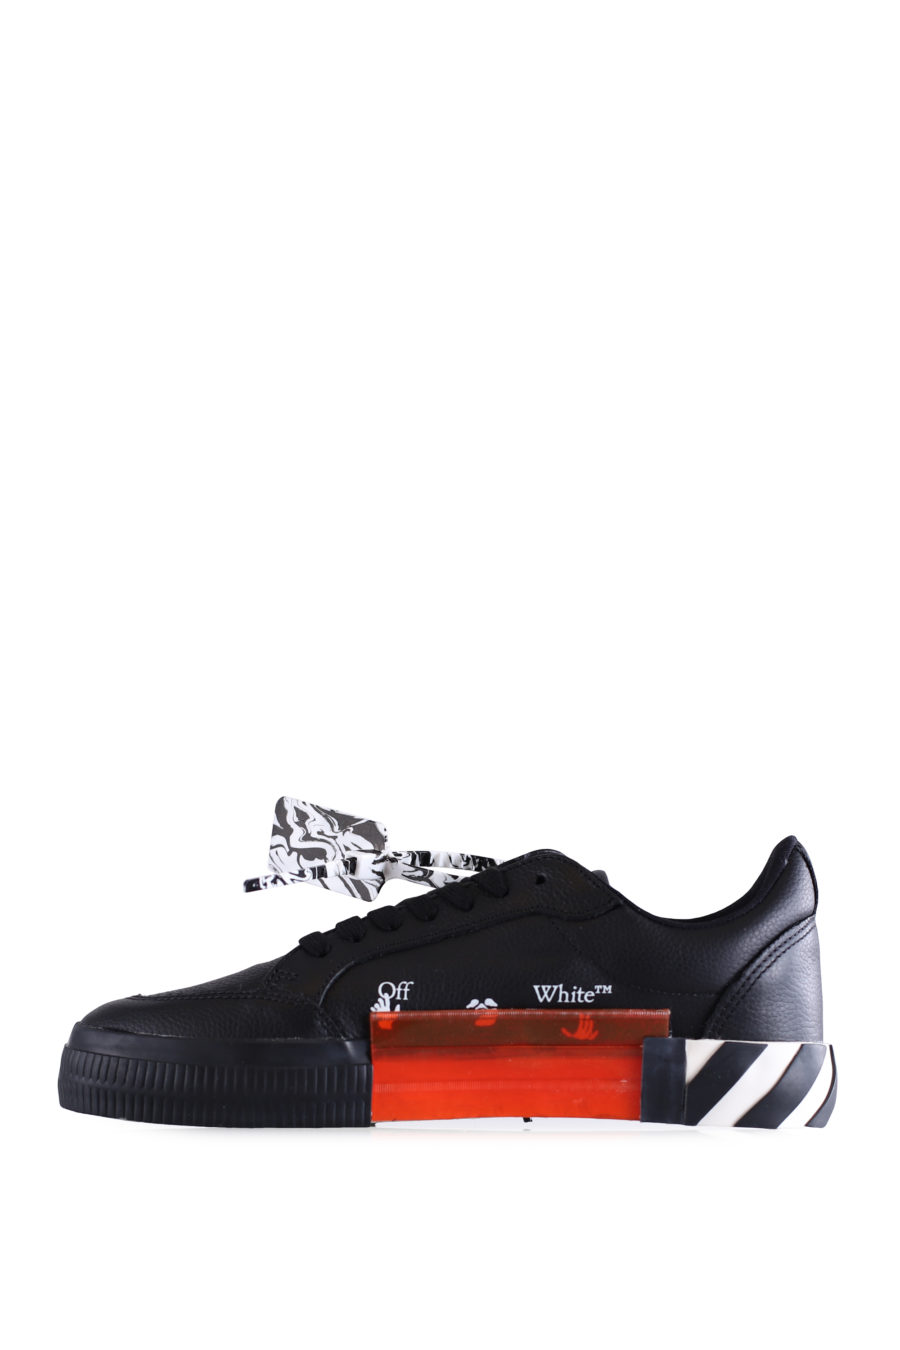 Zapatillas negras "Vulcanized" de cuero - IMG 0664